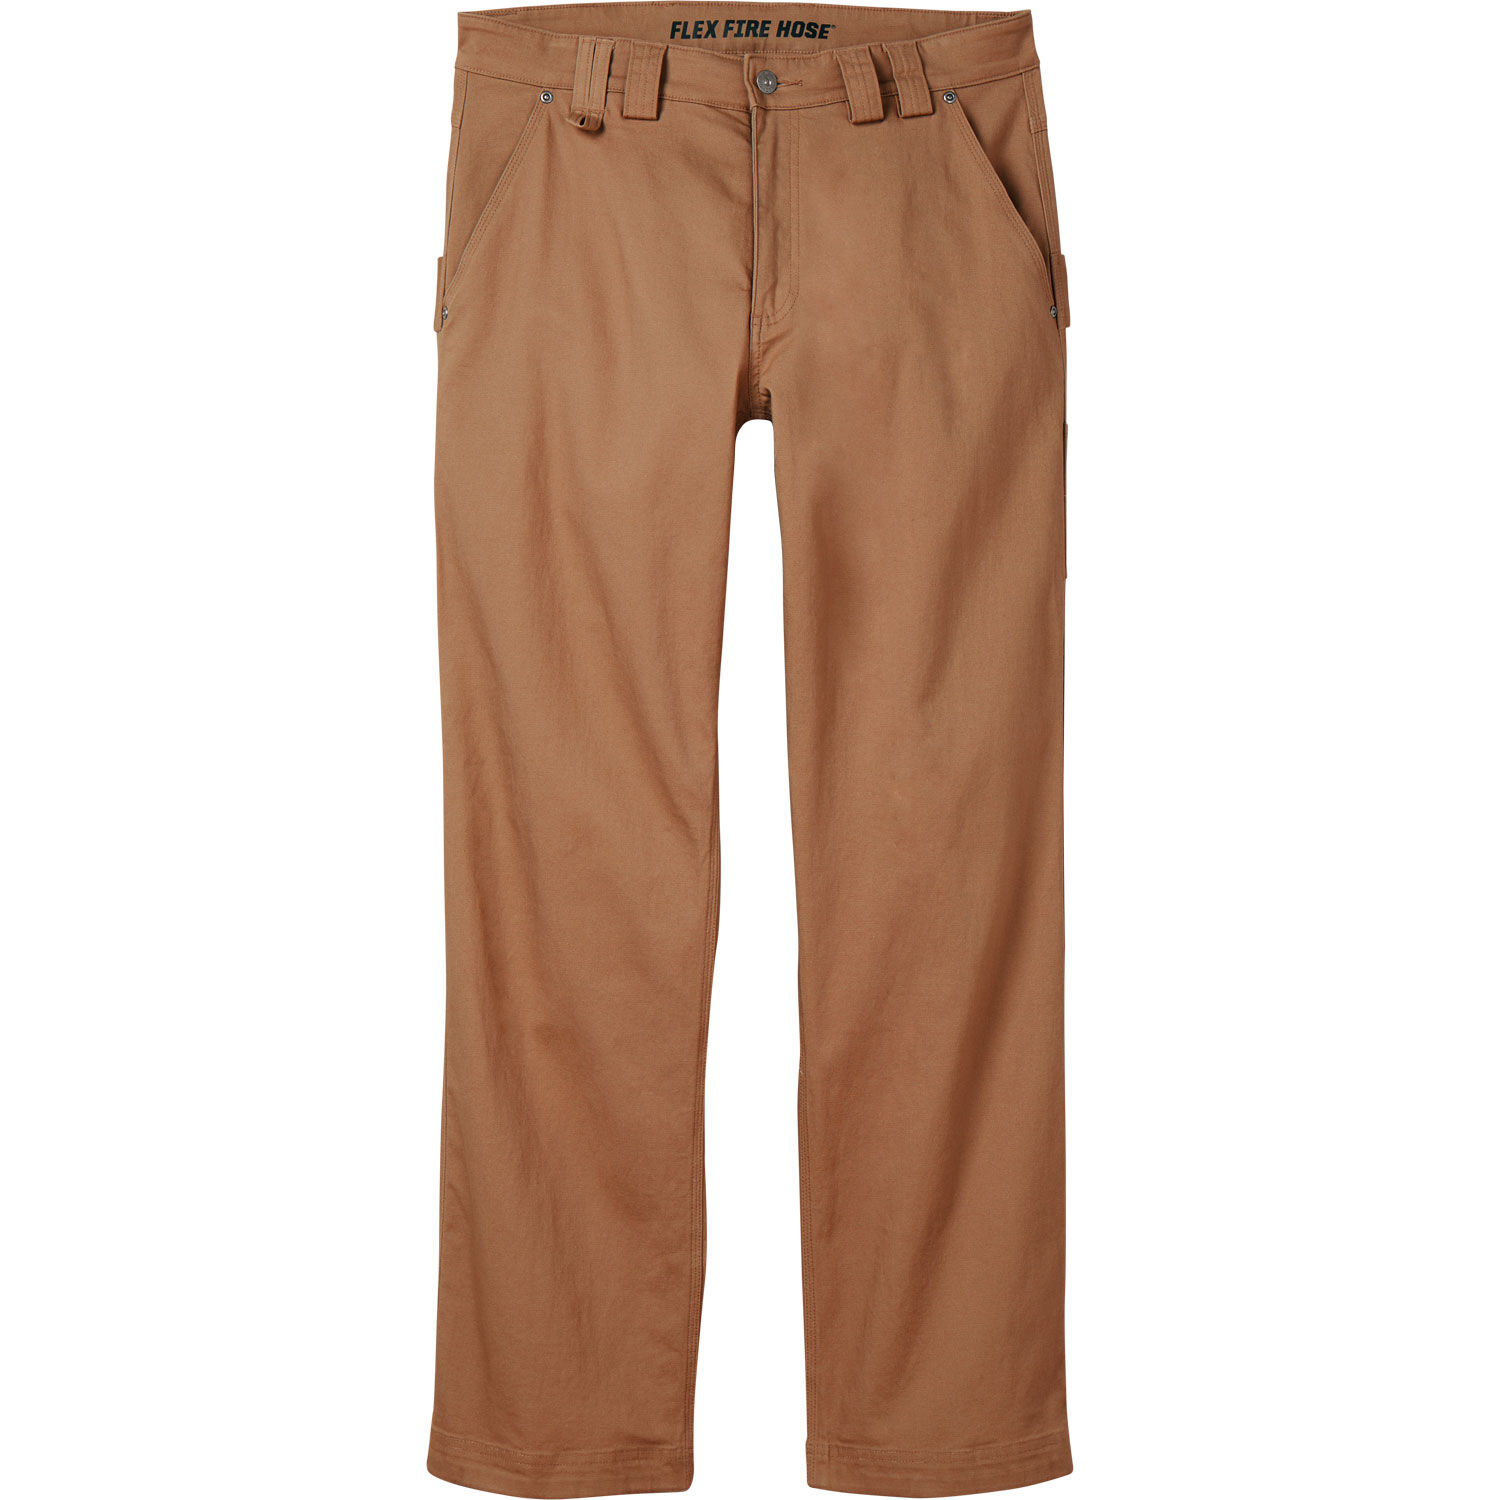 Men's DuluthFlex Fire Hose Relaxed Fit Carpenter Pants | Duluth